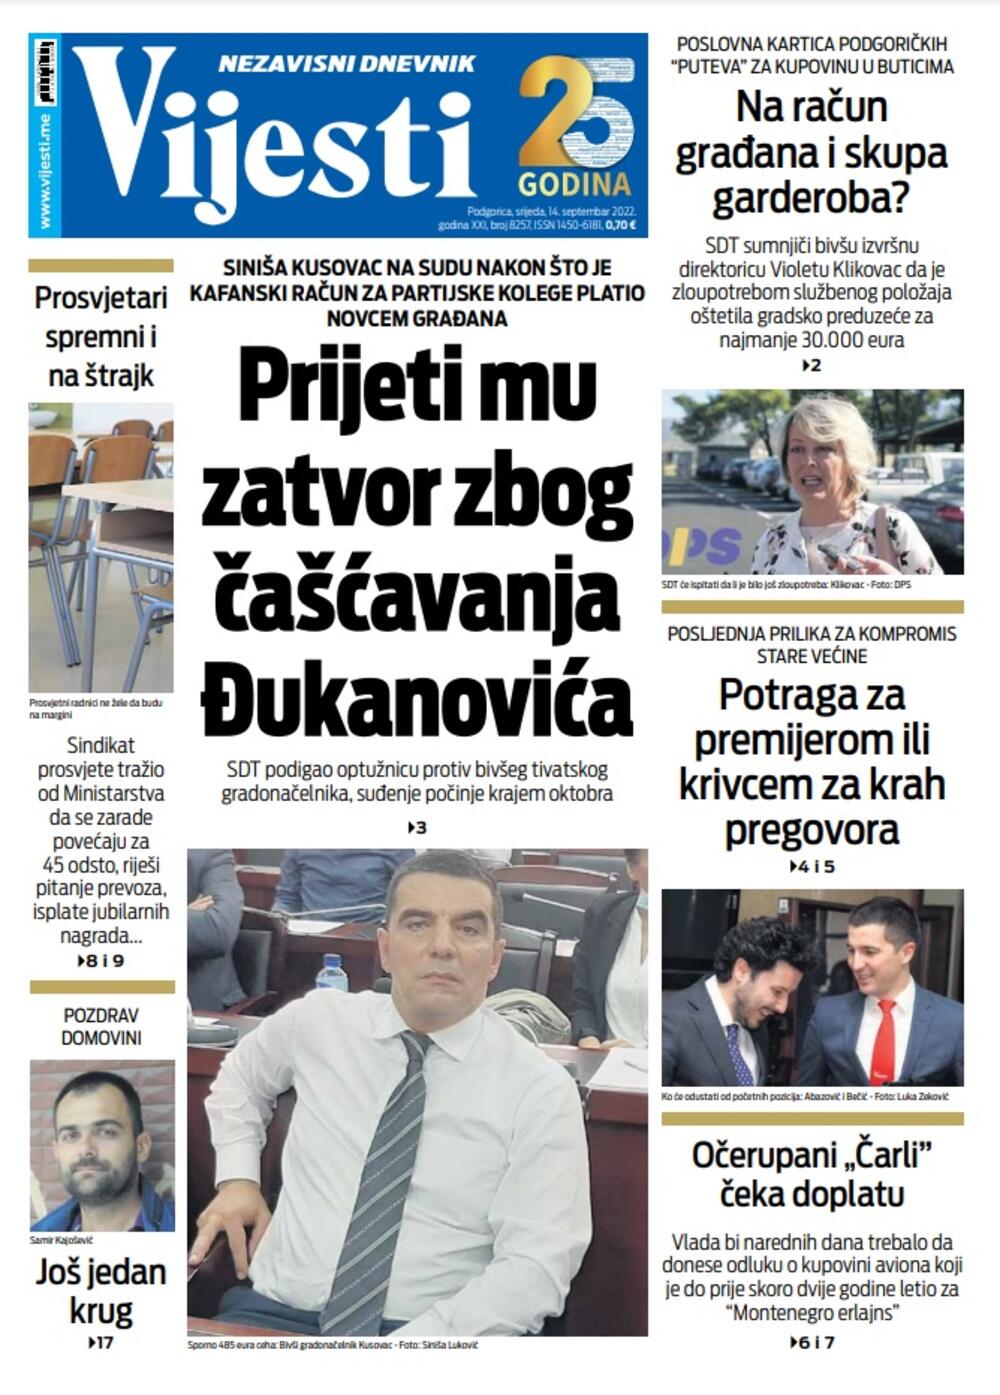 Naslovna strana "Vijesti" za 14. septembar 2022., Foto: Vijesti